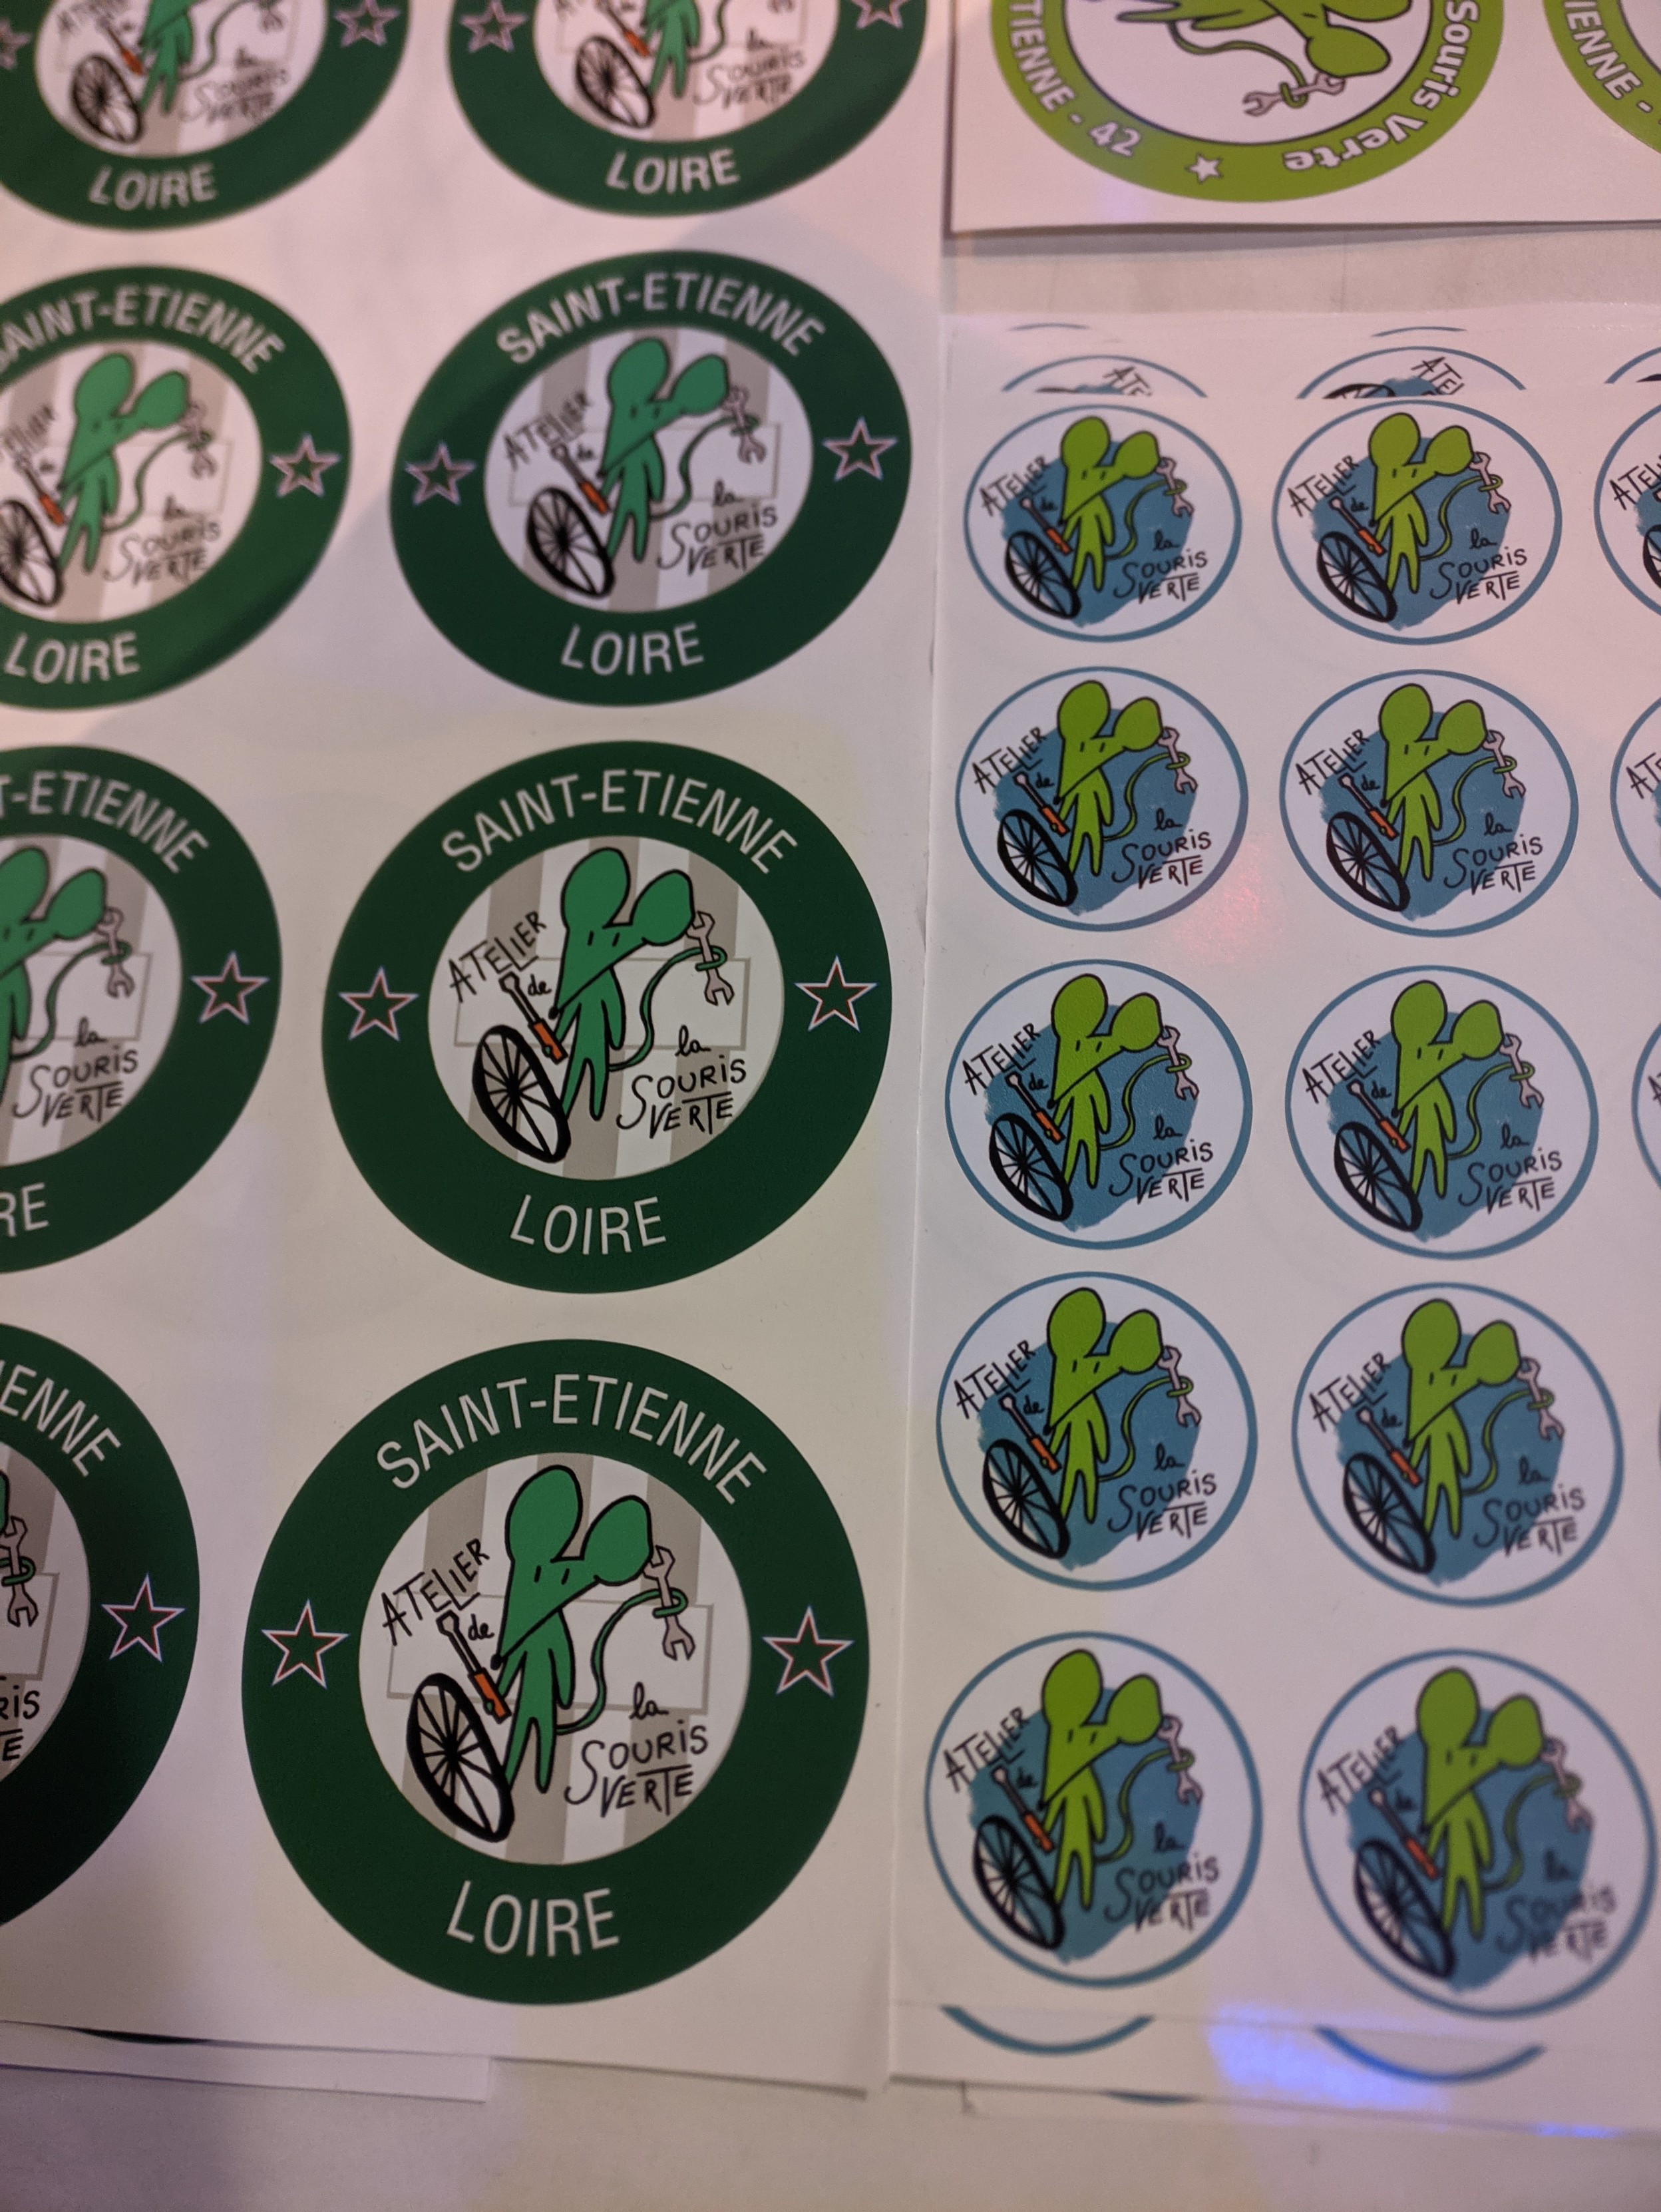 Autres panches de stickers de l'atelier de la souris verte.